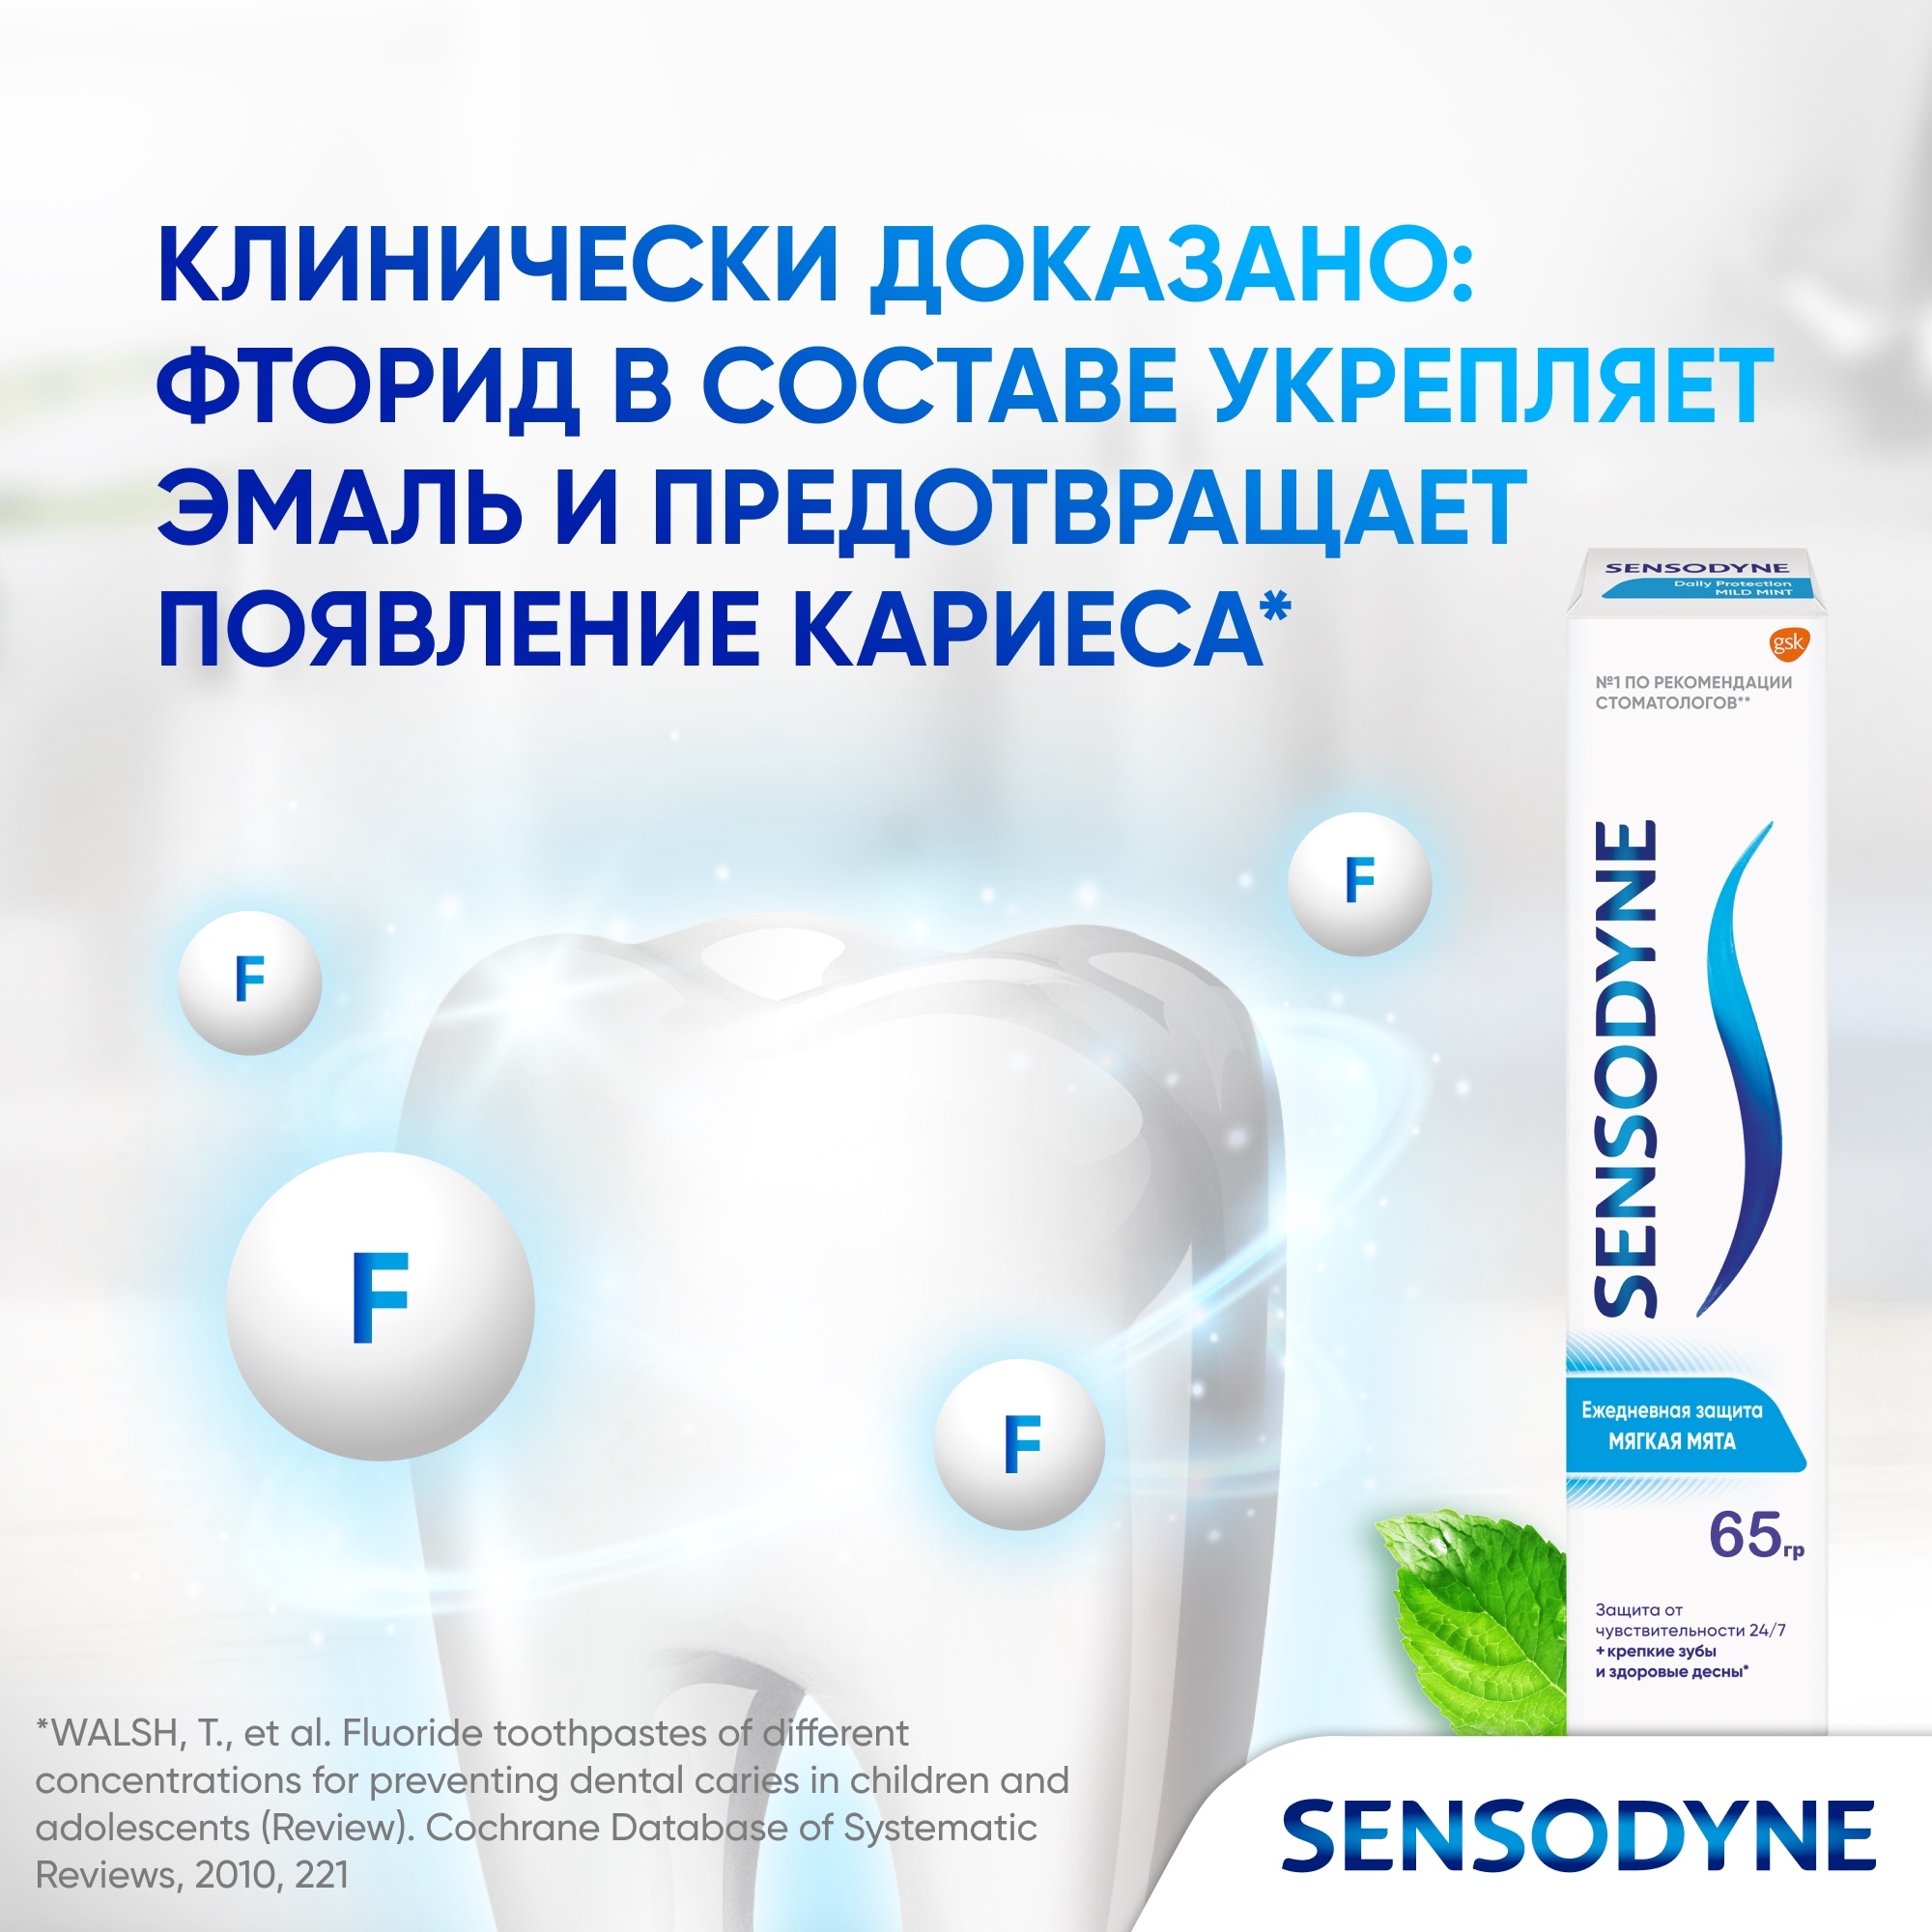 Зубная паста Sensodyne Ежедневная защита Мягкаямята 65 г - фото 12